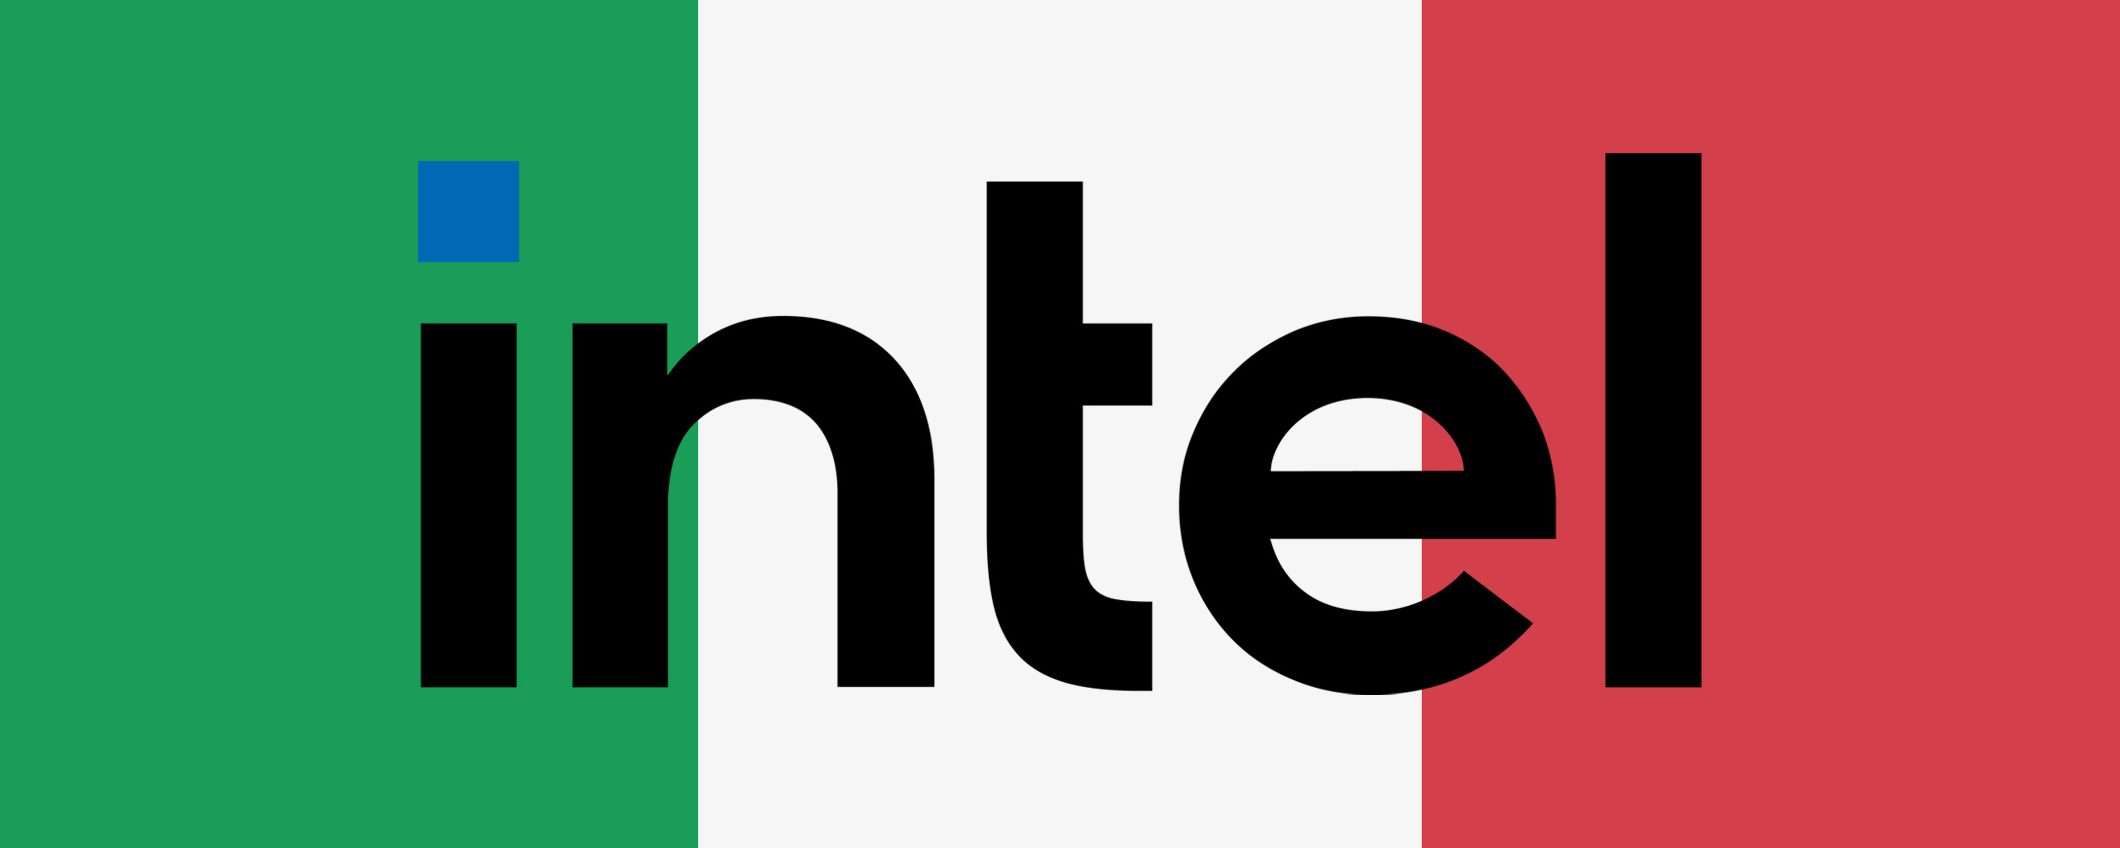 Intel in Italia: impianto da 5 miliardi di dollari